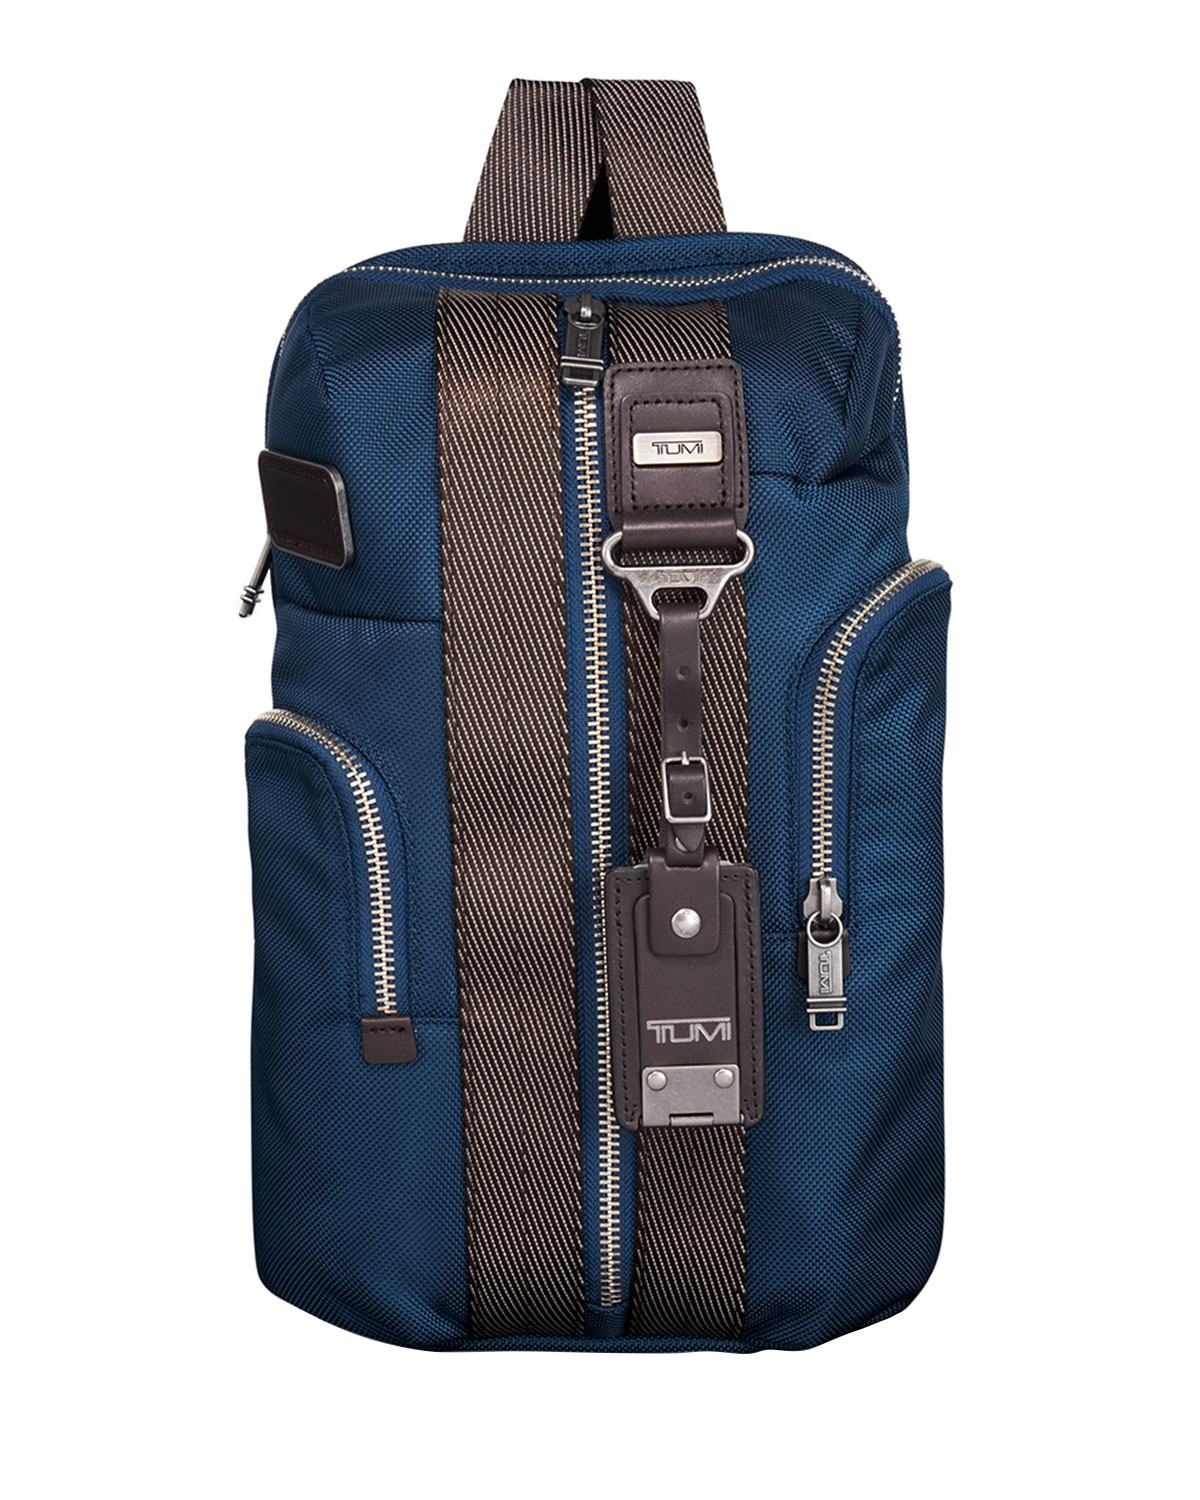 Lyst - Tumi Bravo Monterey Sling Bag in Blue for Men